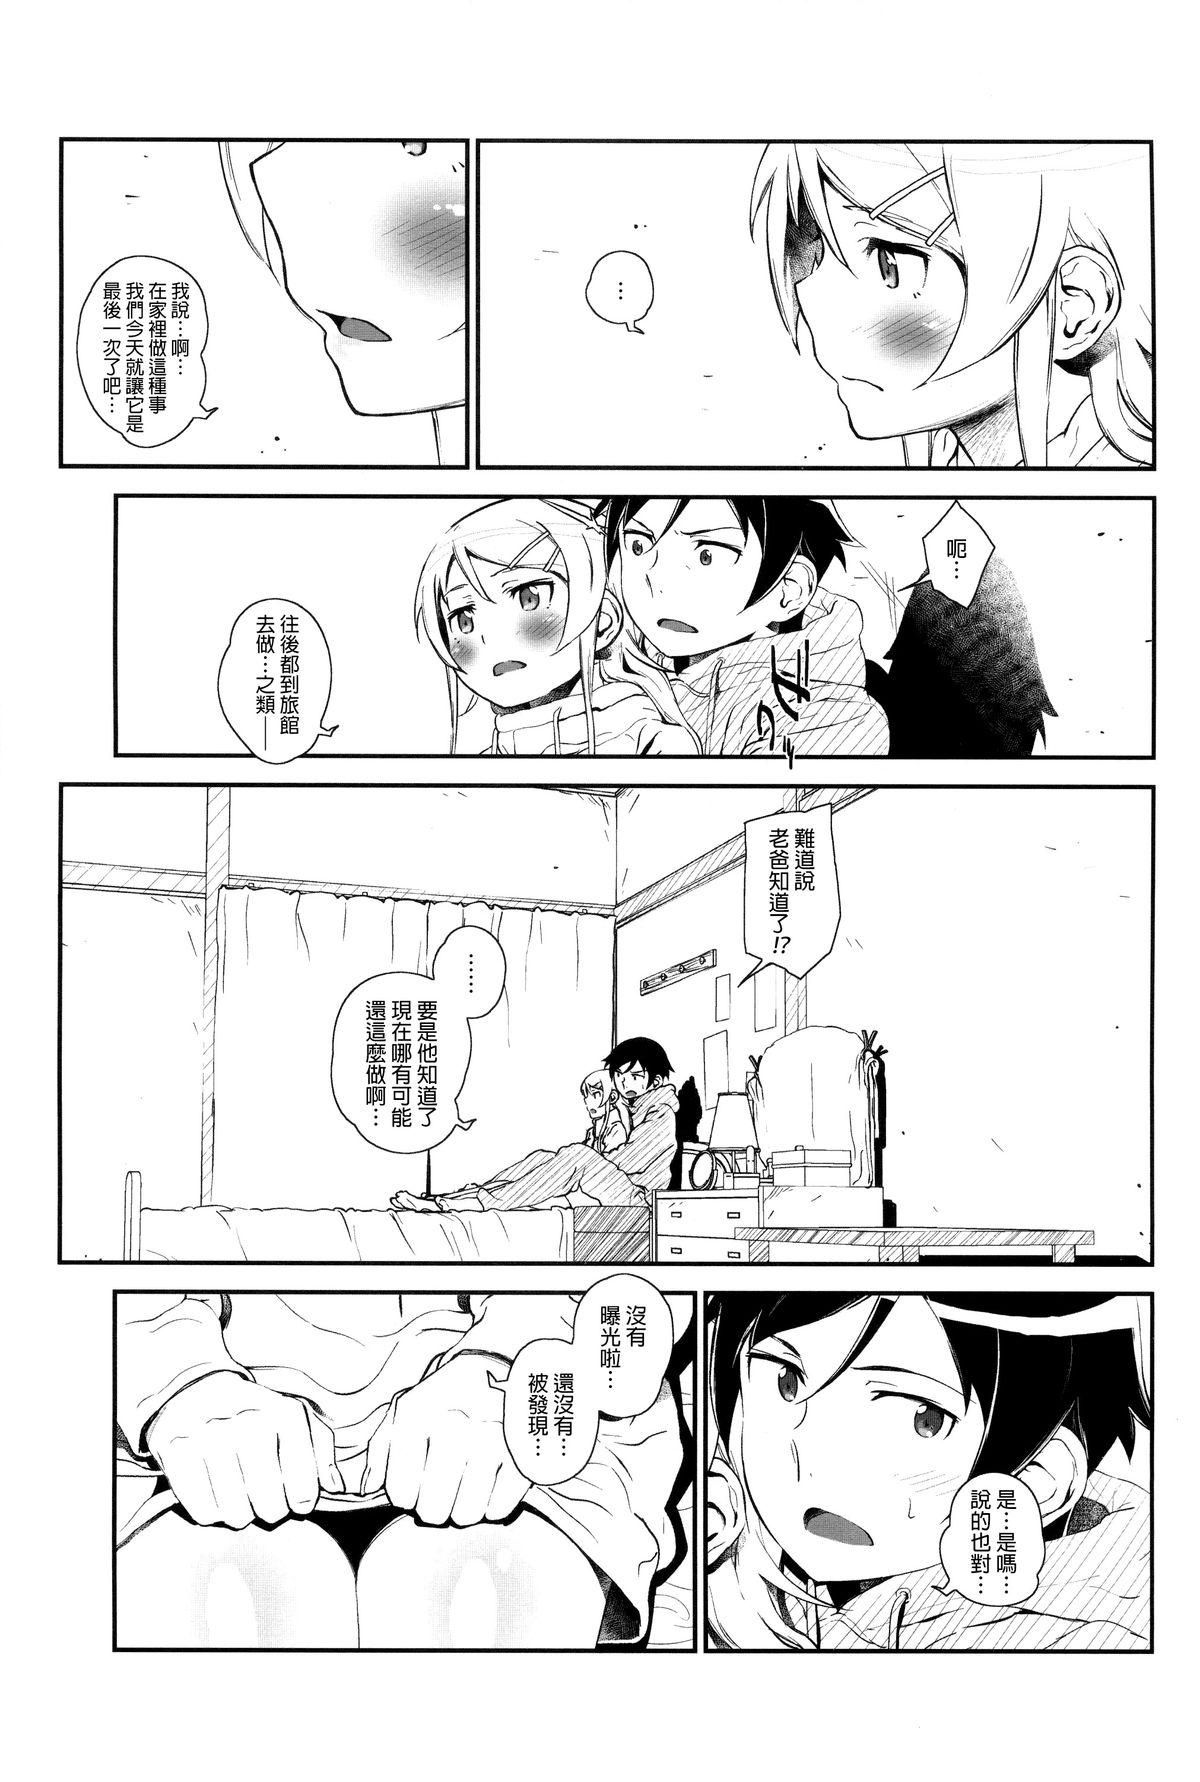 Shecock Hoshikuzu Namida 4 - Ore no imouto ga konna ni kawaii wake ga nai Groupfuck - Page 10